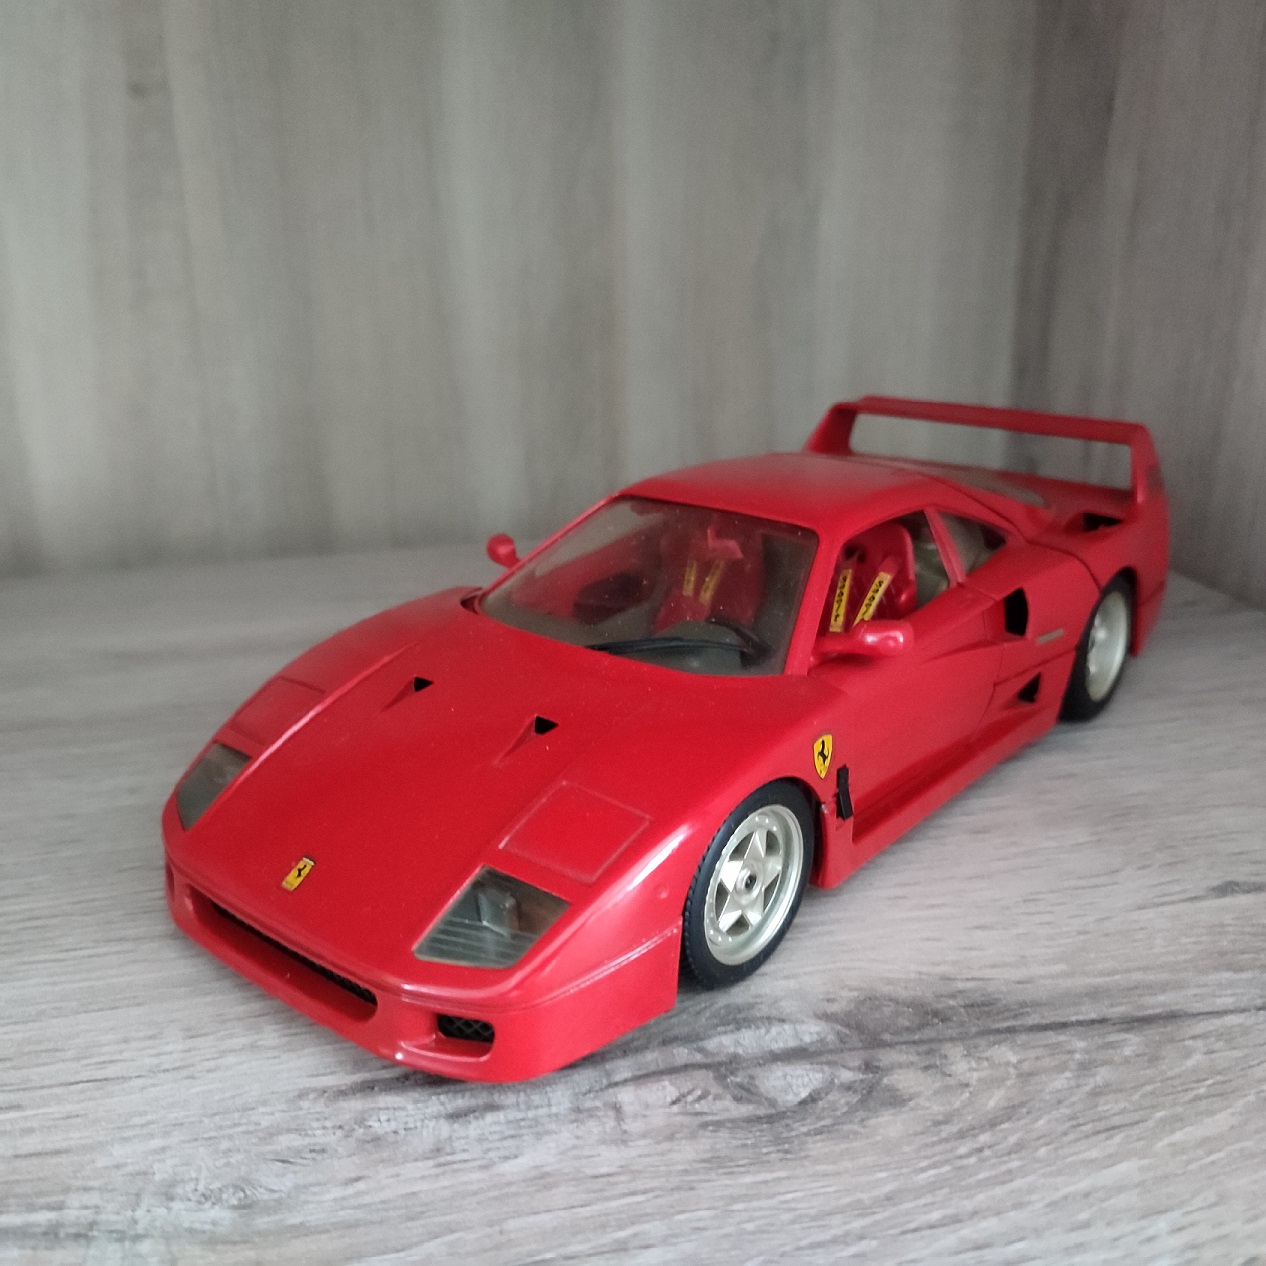 Pièces détachées miniature Burago Ferrari F40 taille 1/18ème